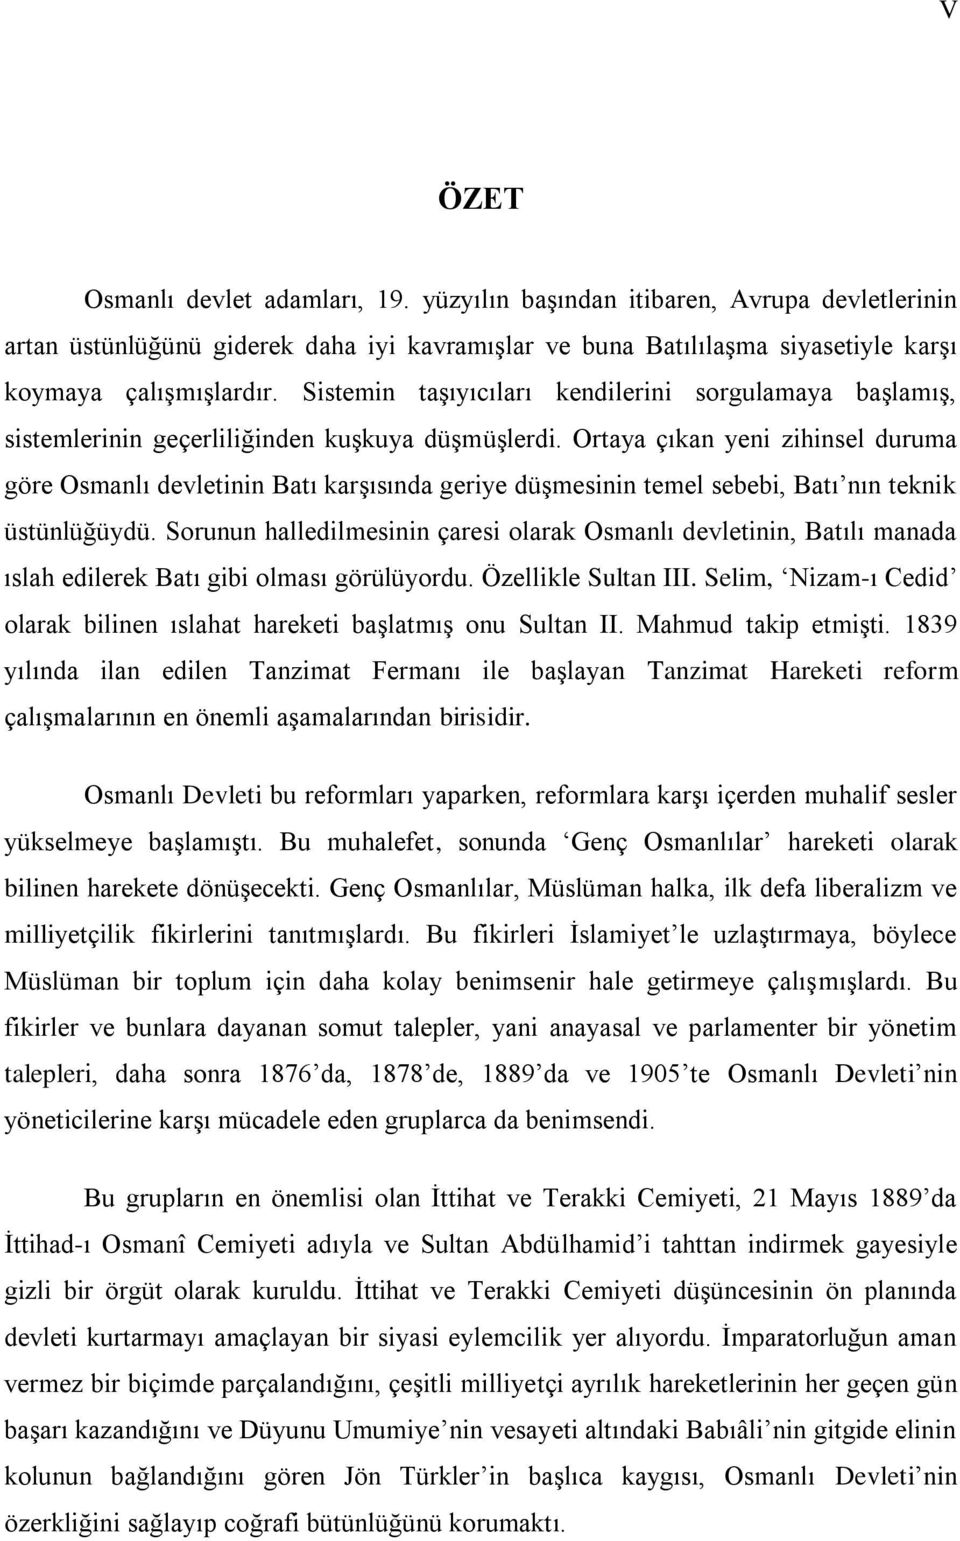 Ortaya çıkan yeni zihinsel duruma göre Osmanlı devletinin Batı karģısında geriye düģmesinin temel sebebi, Batı nın teknik üstünlüğüydü.